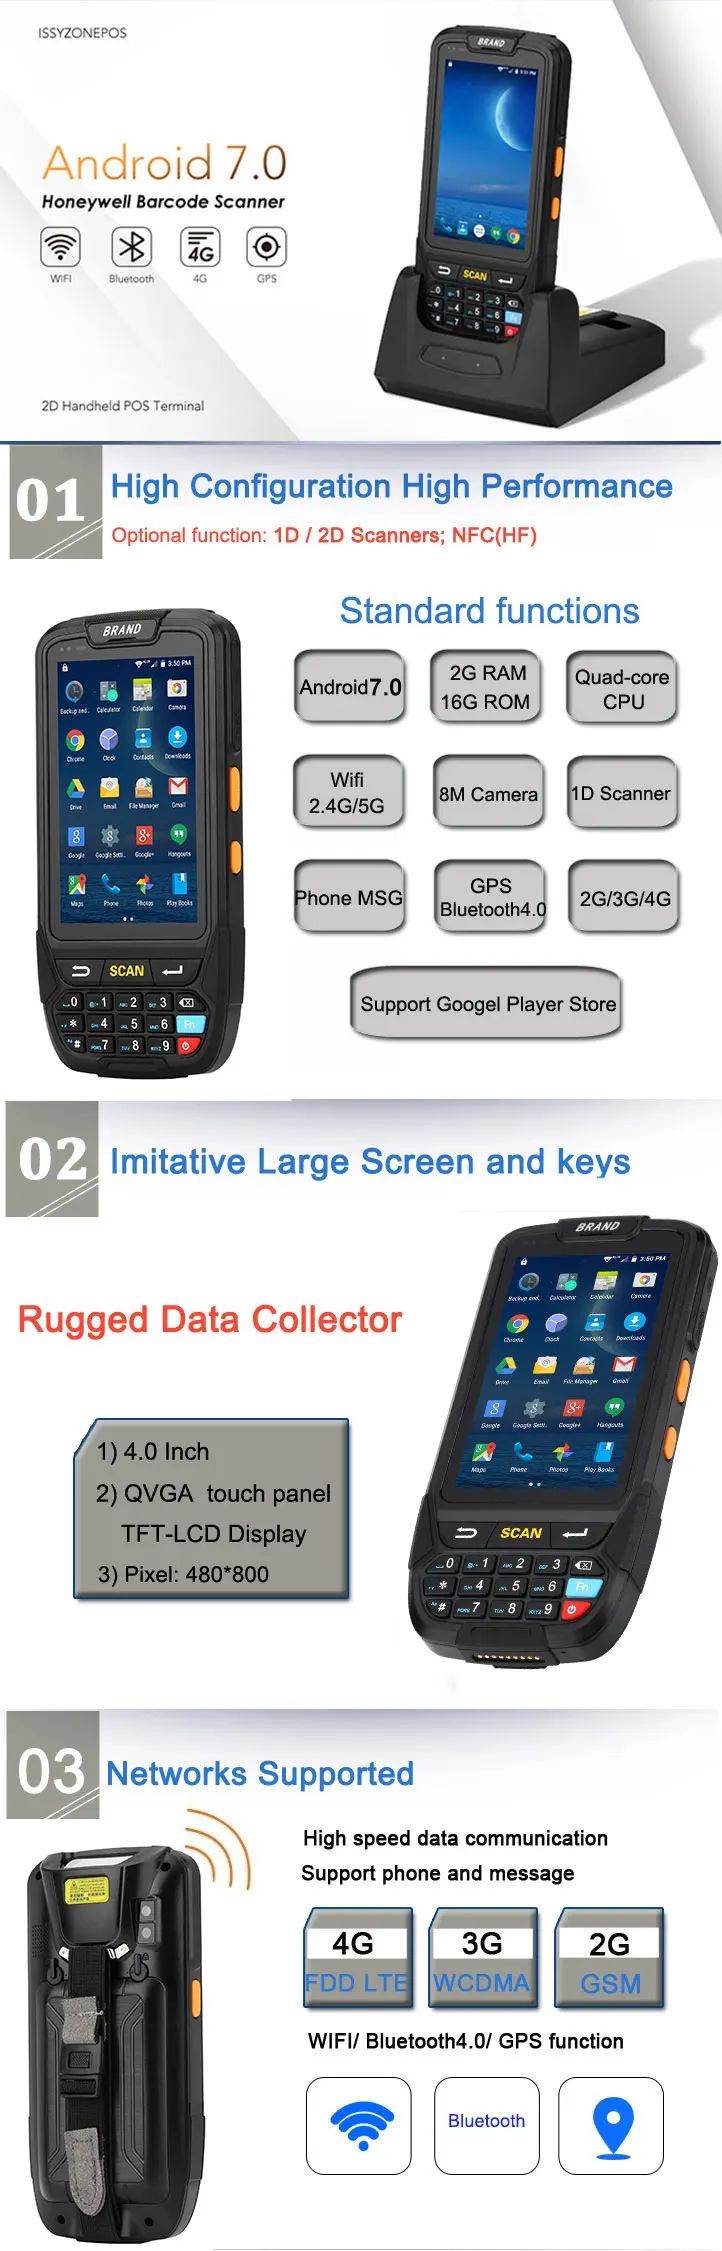 ISSYZONEPOS 4G Android 7,0 ручной КПК pos-терминал 1D 2D сканер штрих-кода беспроводной Wi-Fi Bluetooth gps считыватель штрих-кодов Waarehouse